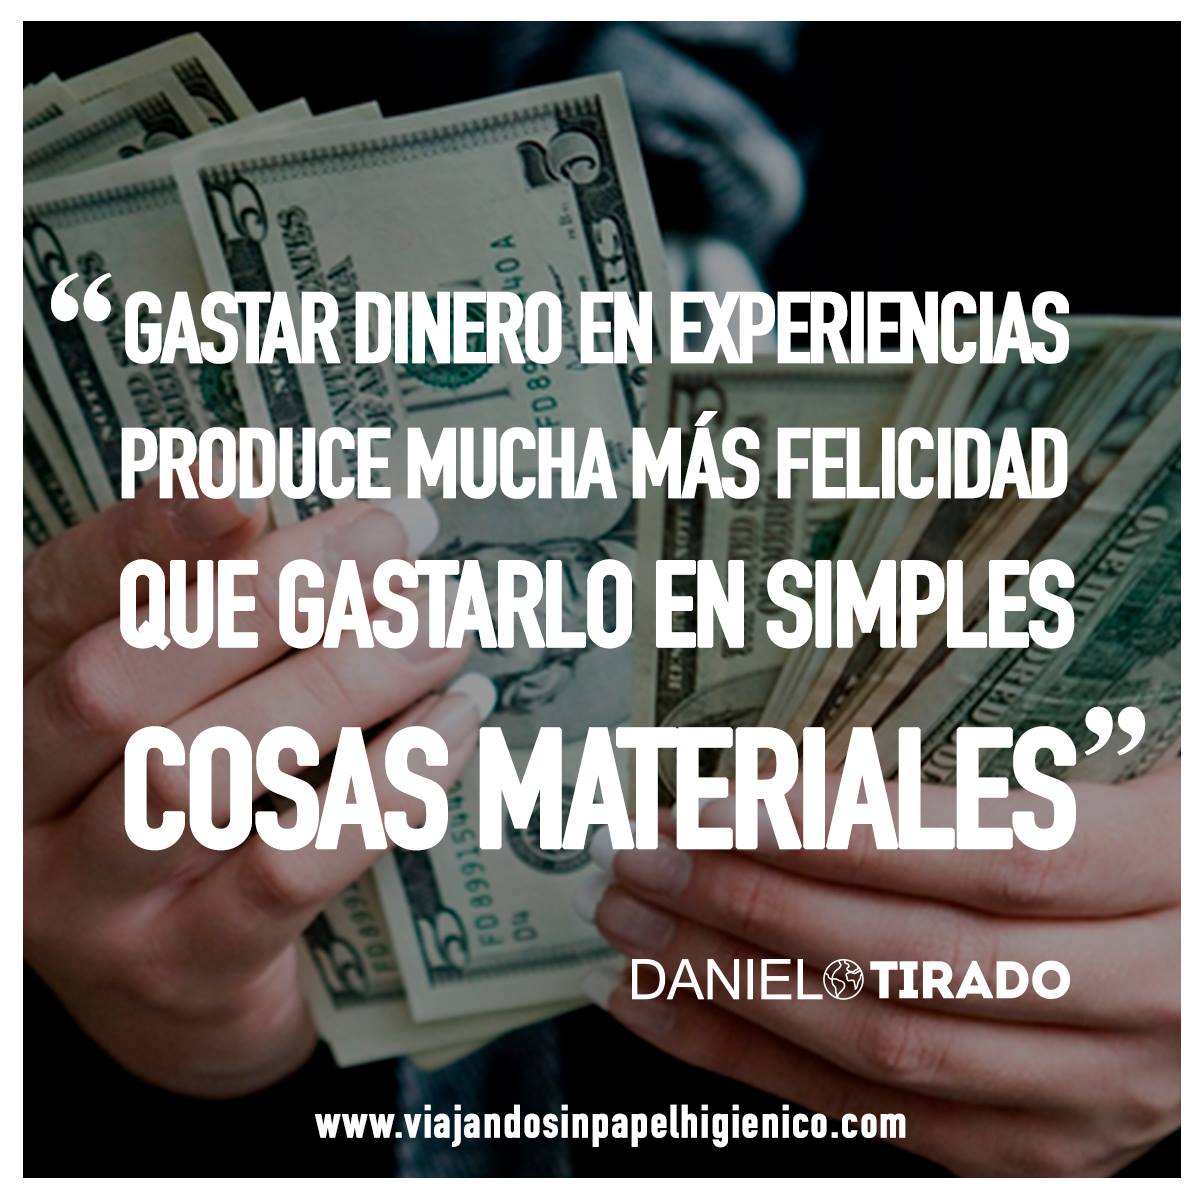 DANIEL TIRADO on Twitter: "Gastar dinero en experiencias produce mucha más  felicidad que gastarlo en simples cosas materiales. #DanielTirado  https://t.co/ER2cYub2BY" / Twitter